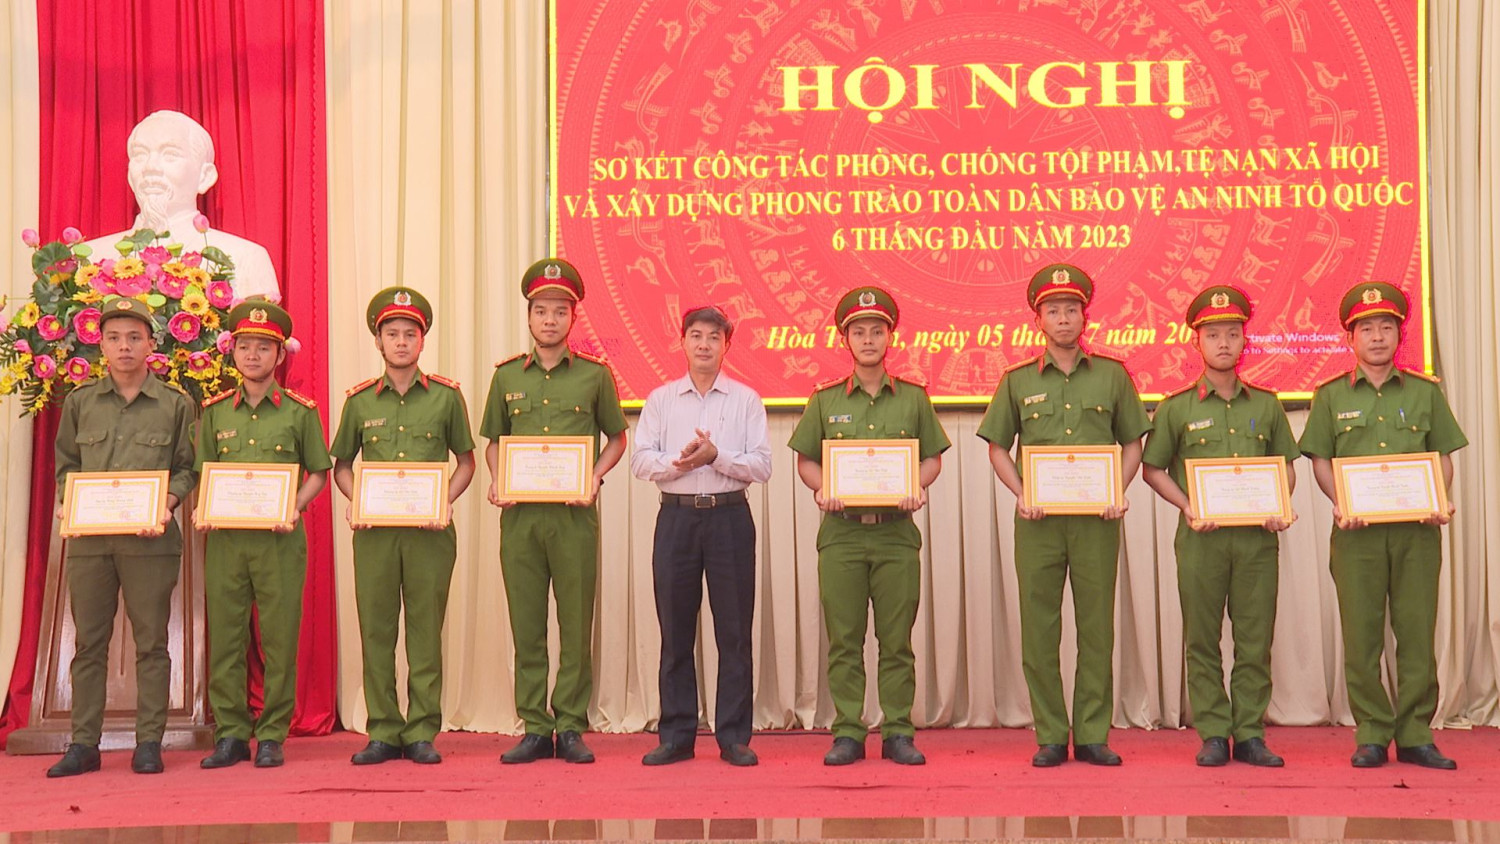 Chủ tịch UBND thị xã Hoà Thành Trương Văn Hoàn khen thưởng cho các cá nhân có thành tích xuất sắc trong công tác đấu tranh phòng, chống tội phạm 6 tháng đầu năm 2023